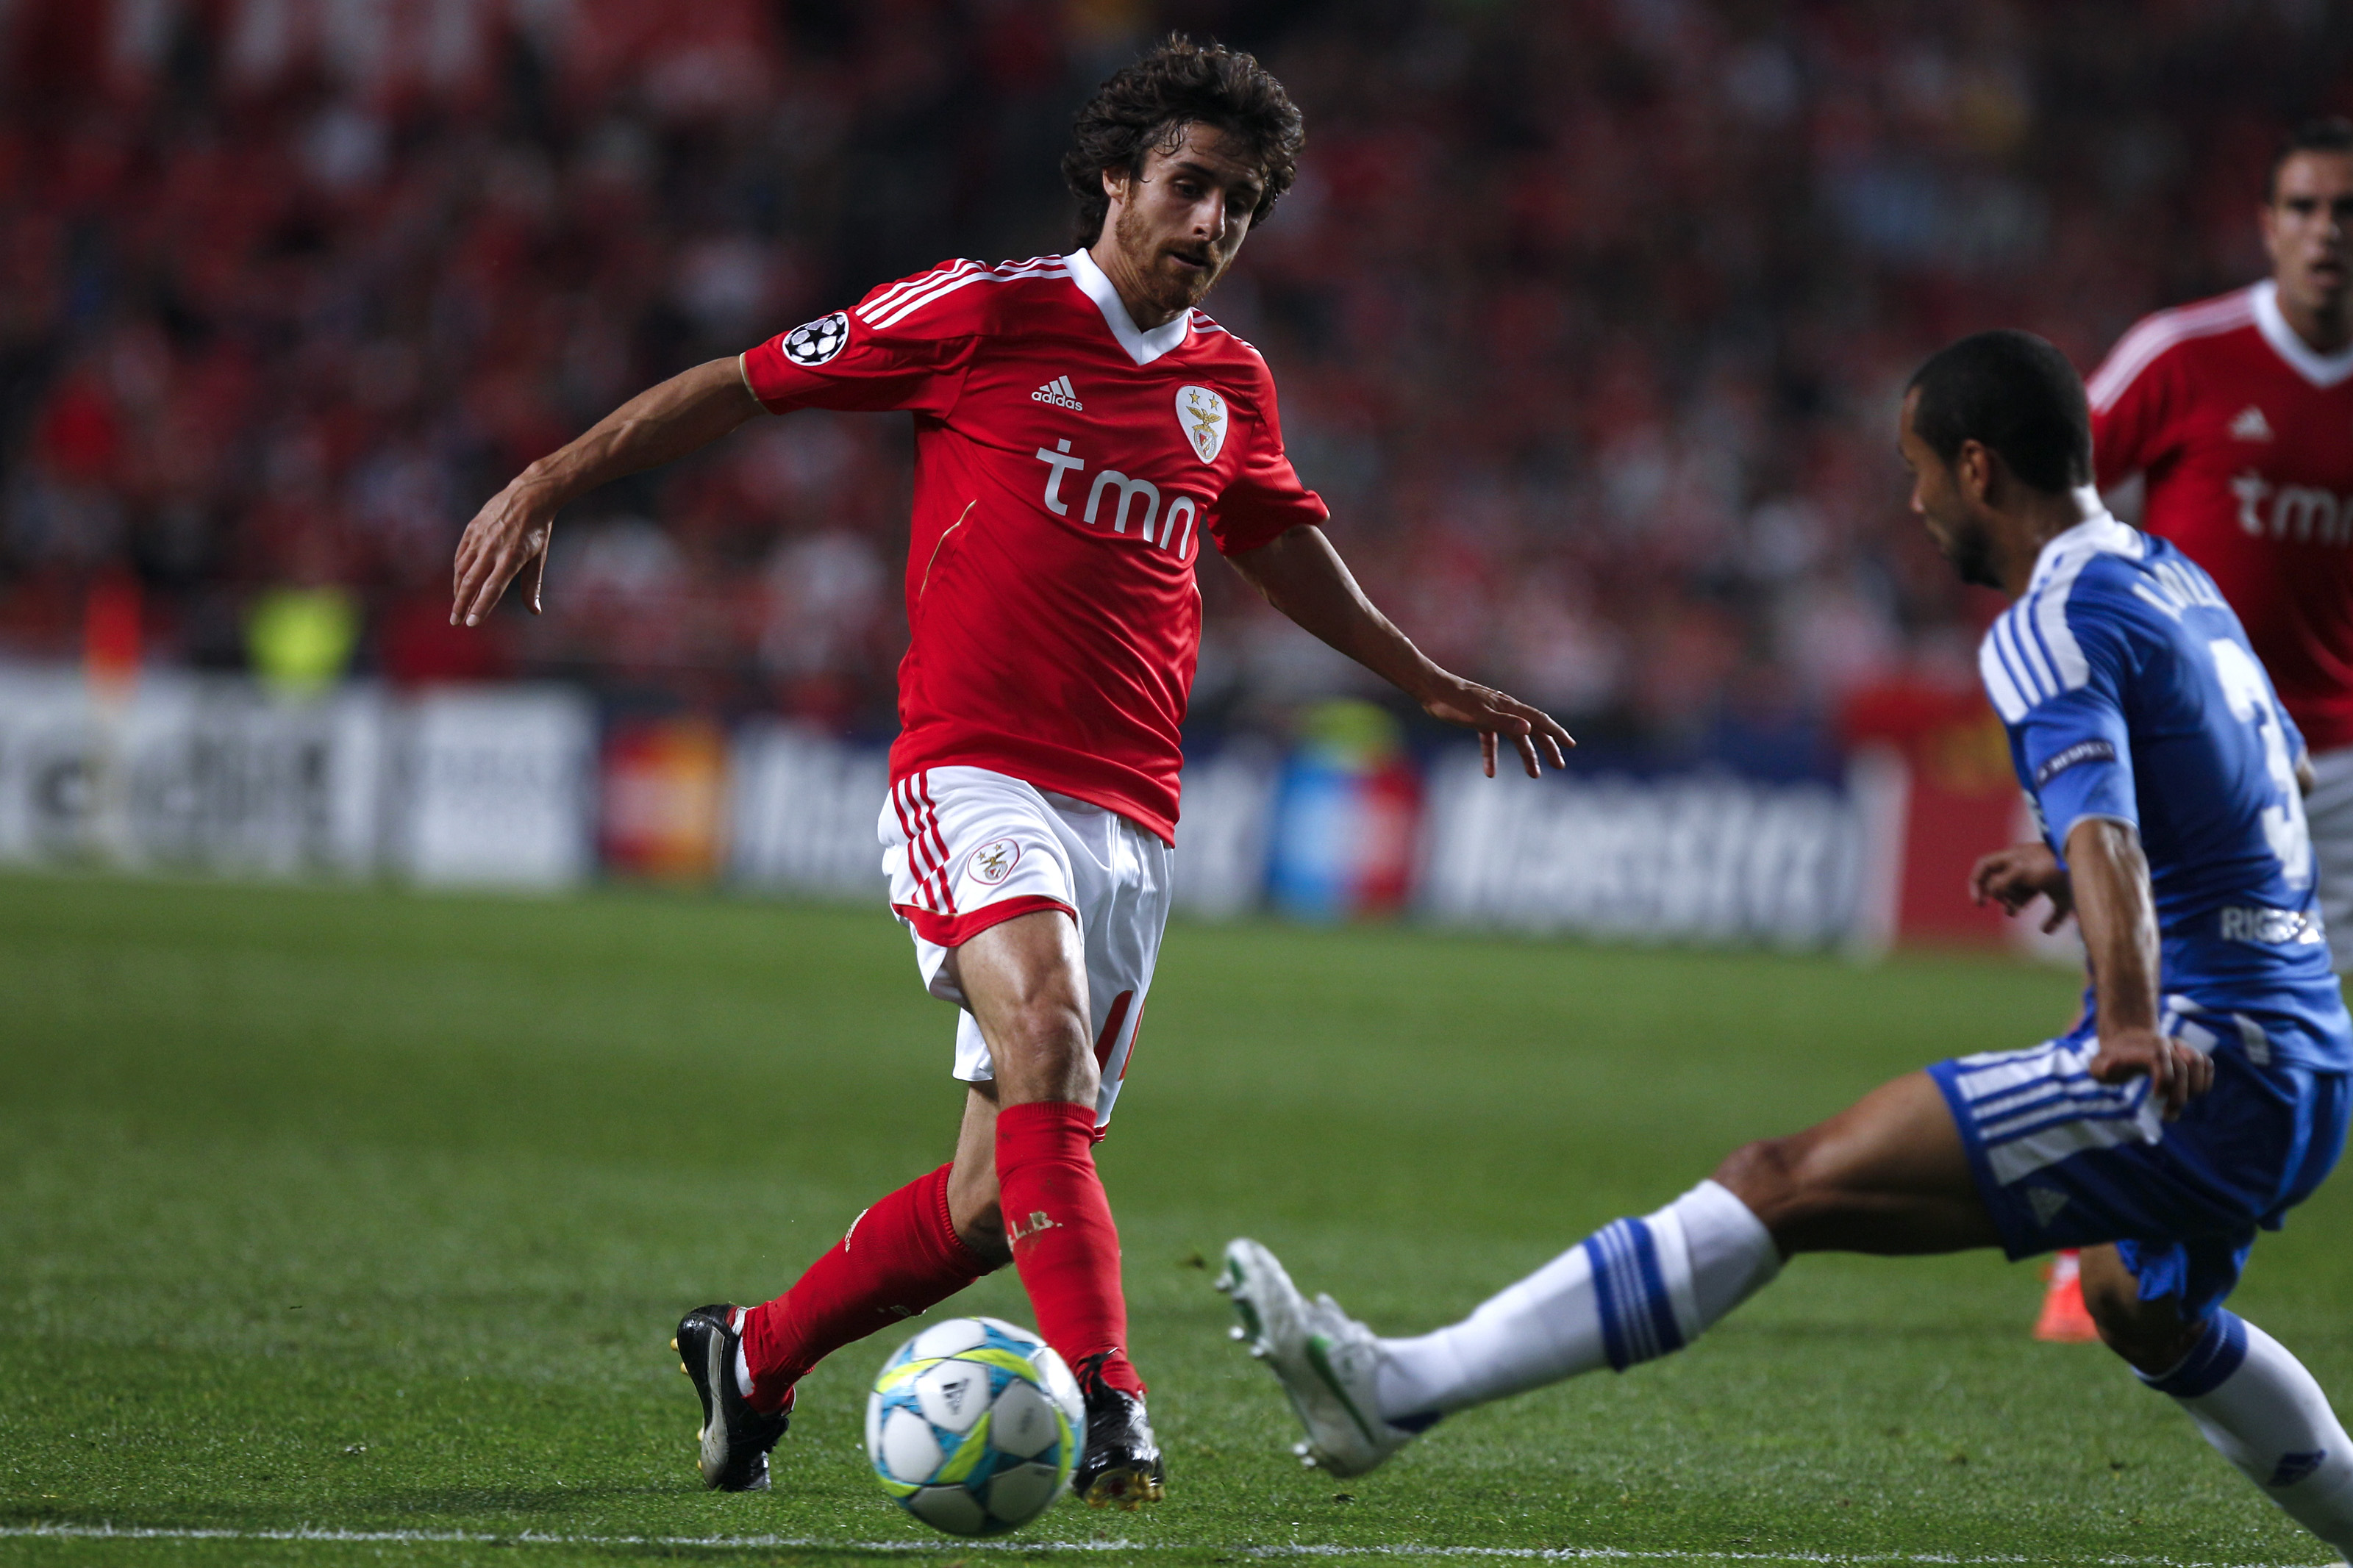 Pablo "Näste Maradona" Aimar fick inte mycket uträttat mot ett samlat Chelsea försvar, personifierat av Ashley Cole i den här bilden.